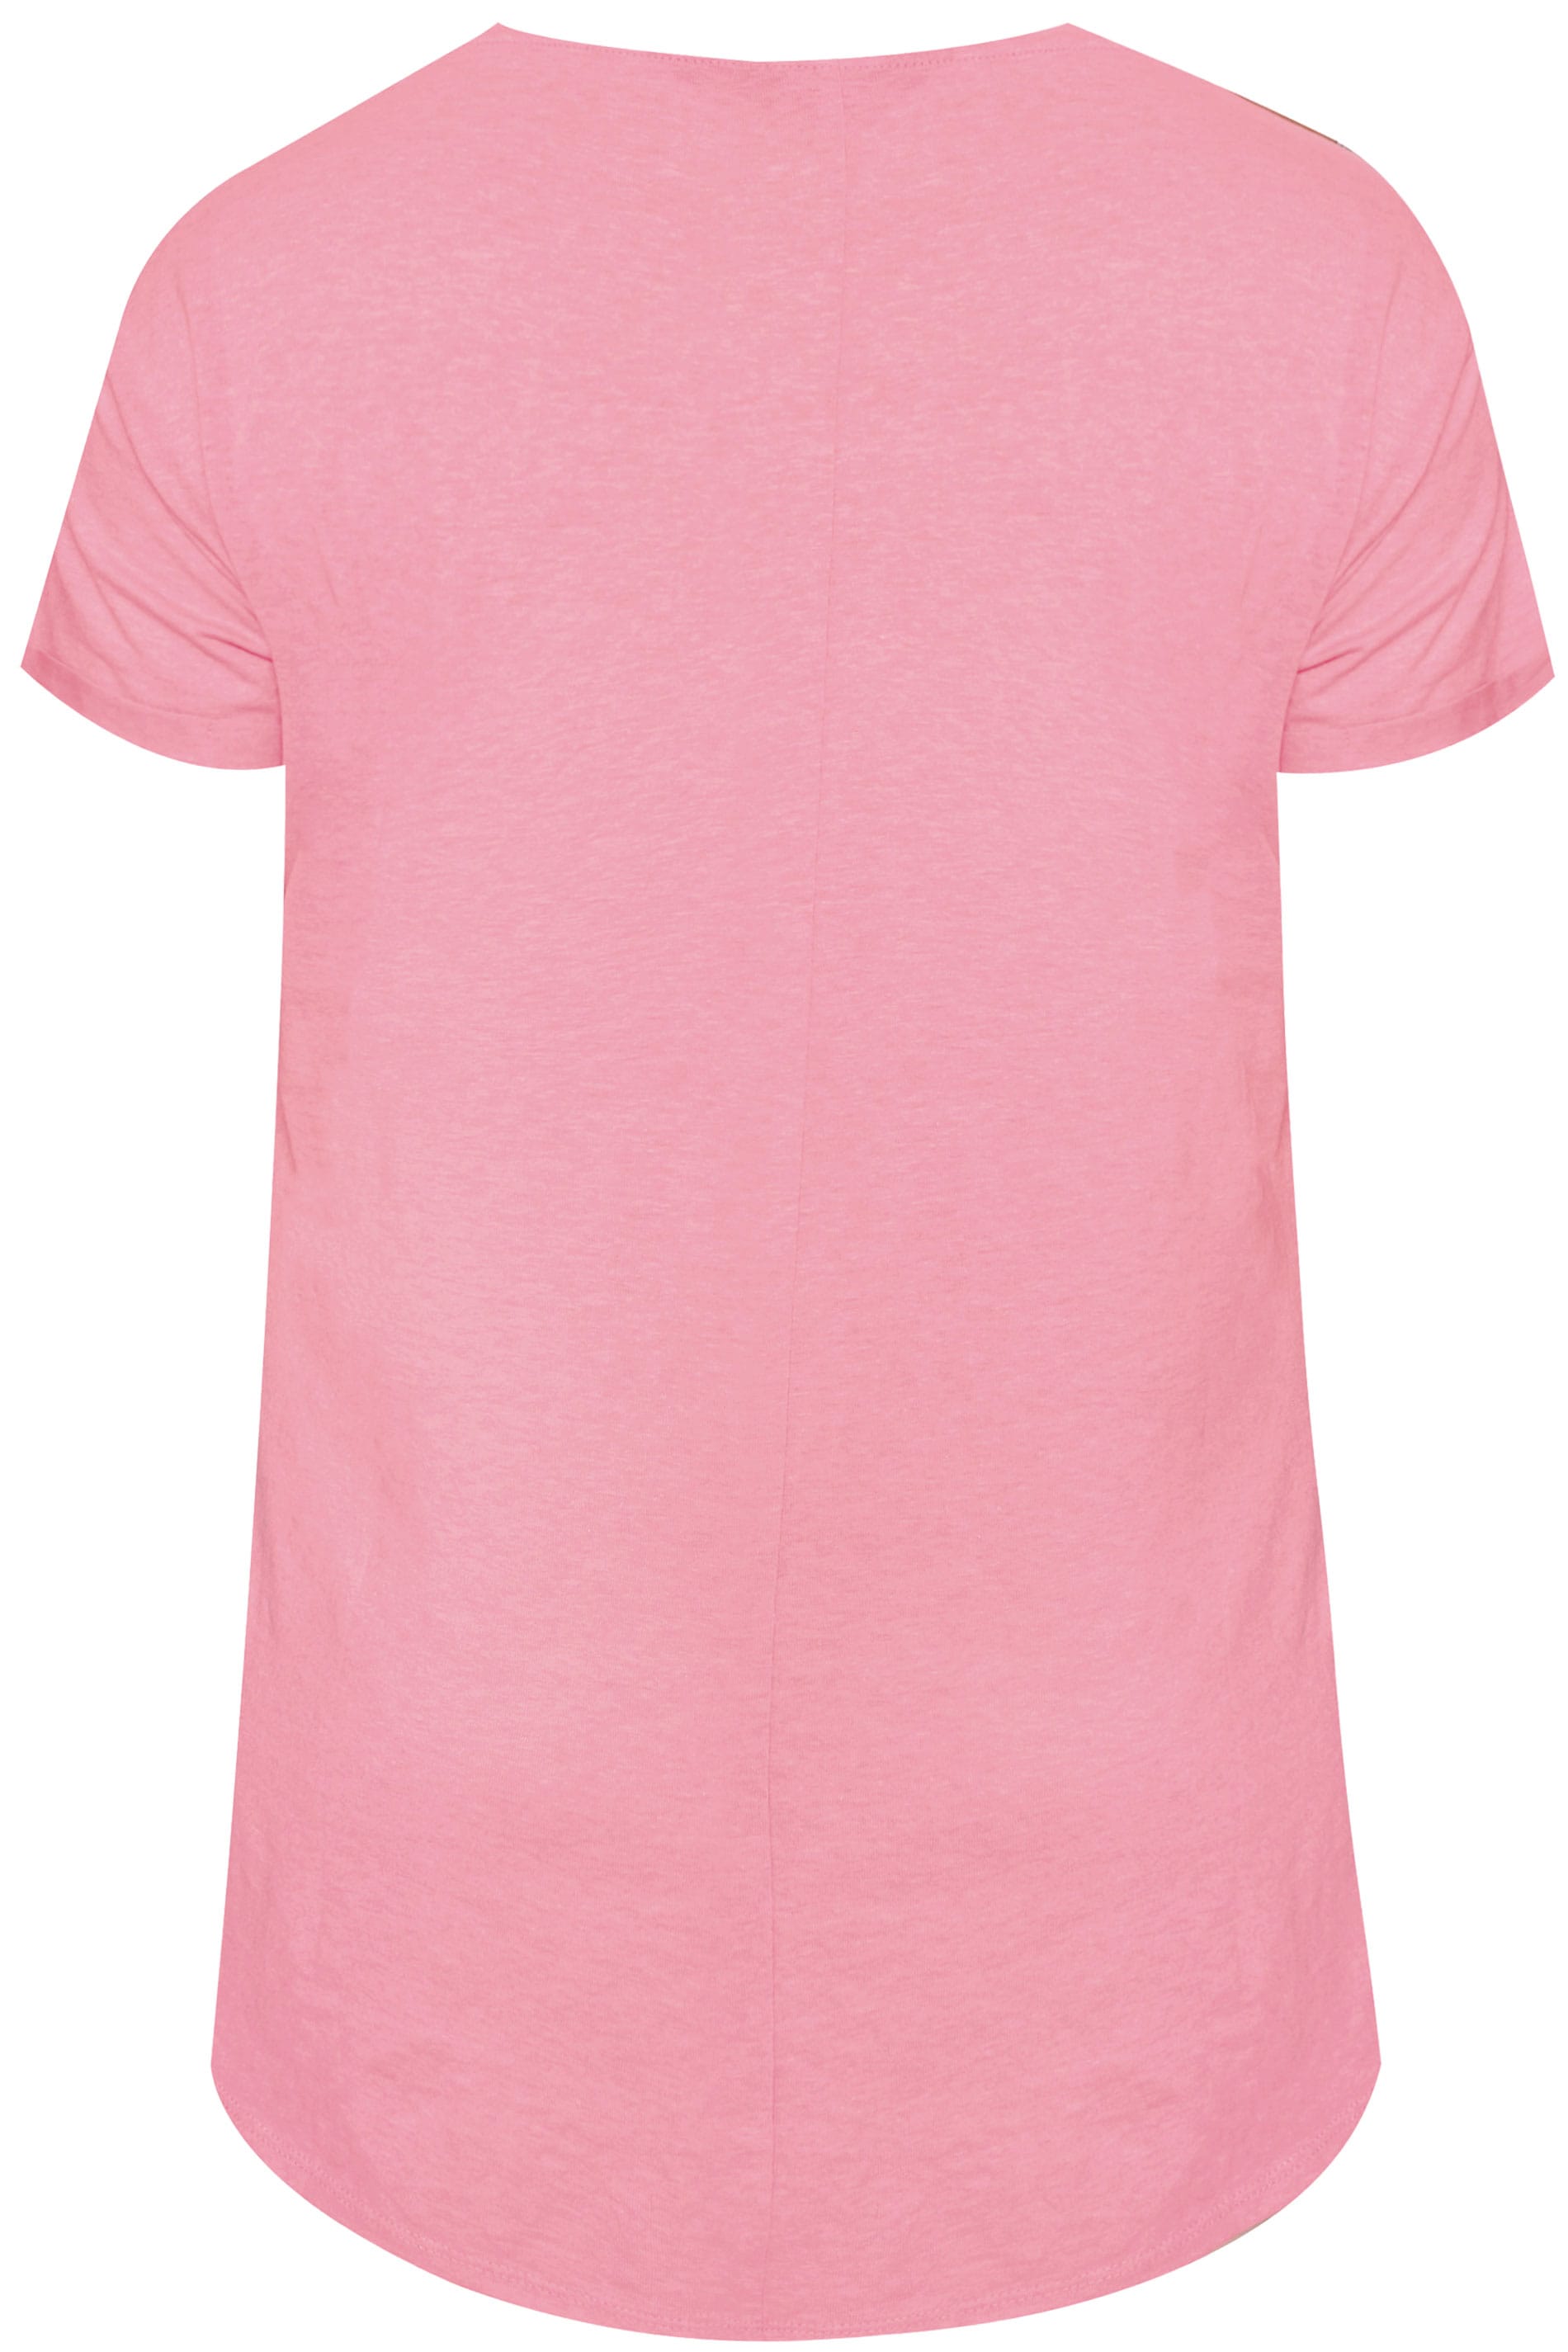 Pink T Shirt Mockup